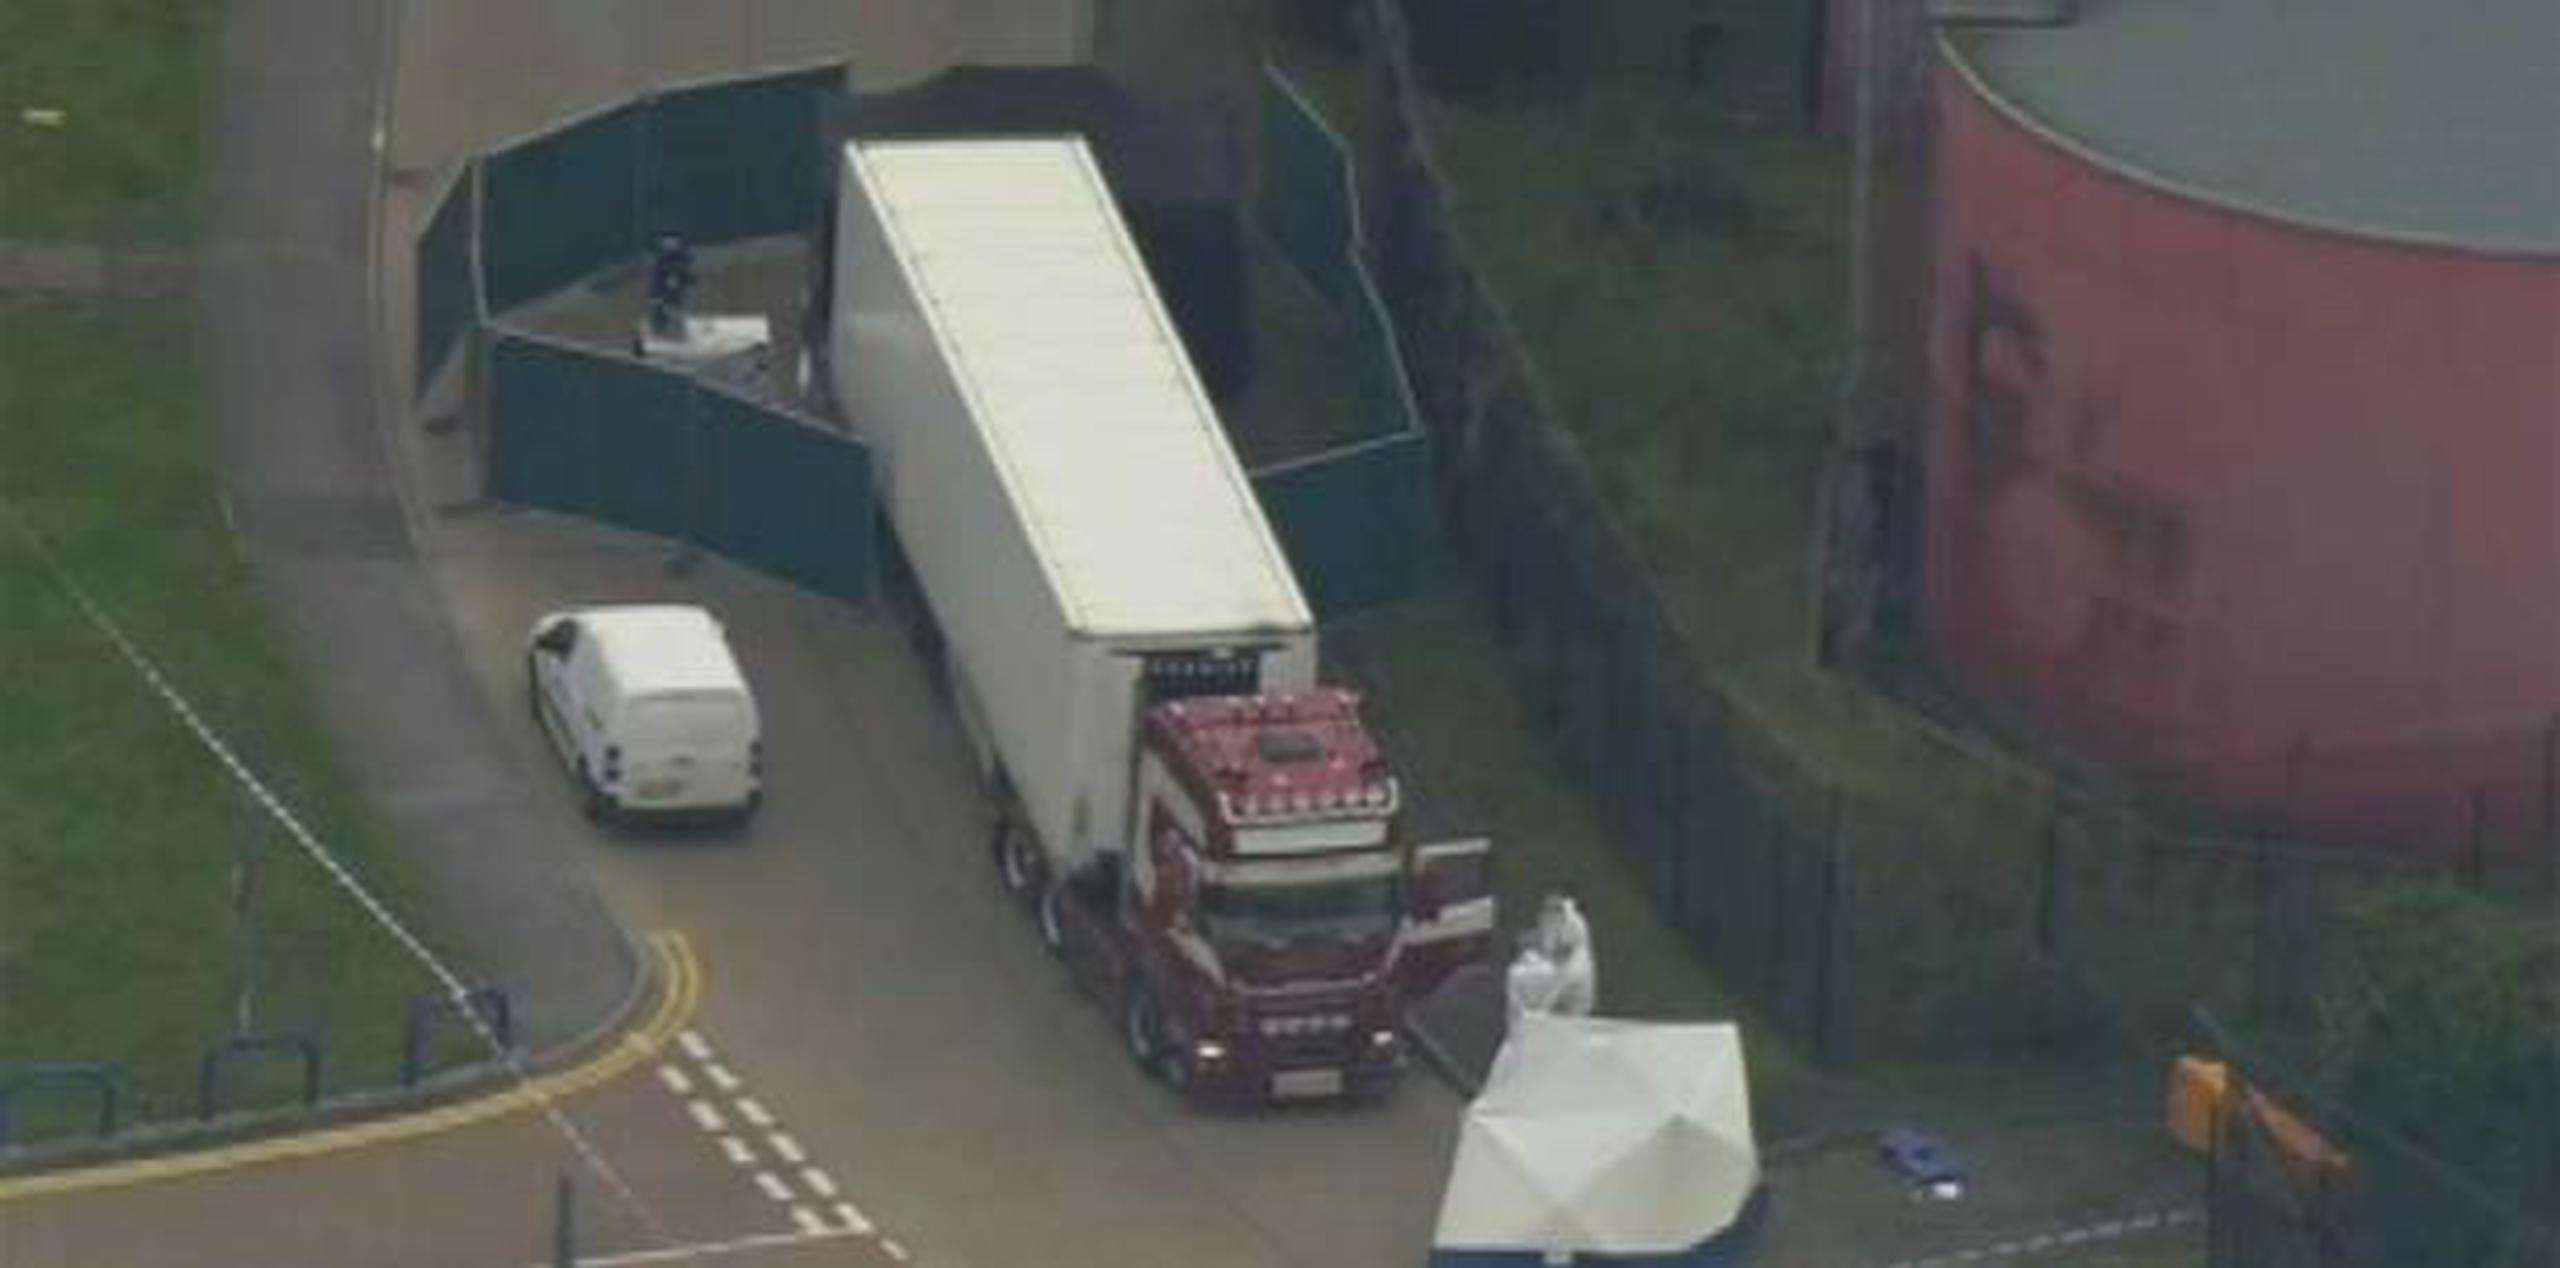 El camión con 39 cadáveres fue hallado la madrugada del miércoles en un parque industrial en el sudeste de Inglaterra. (Archivo)